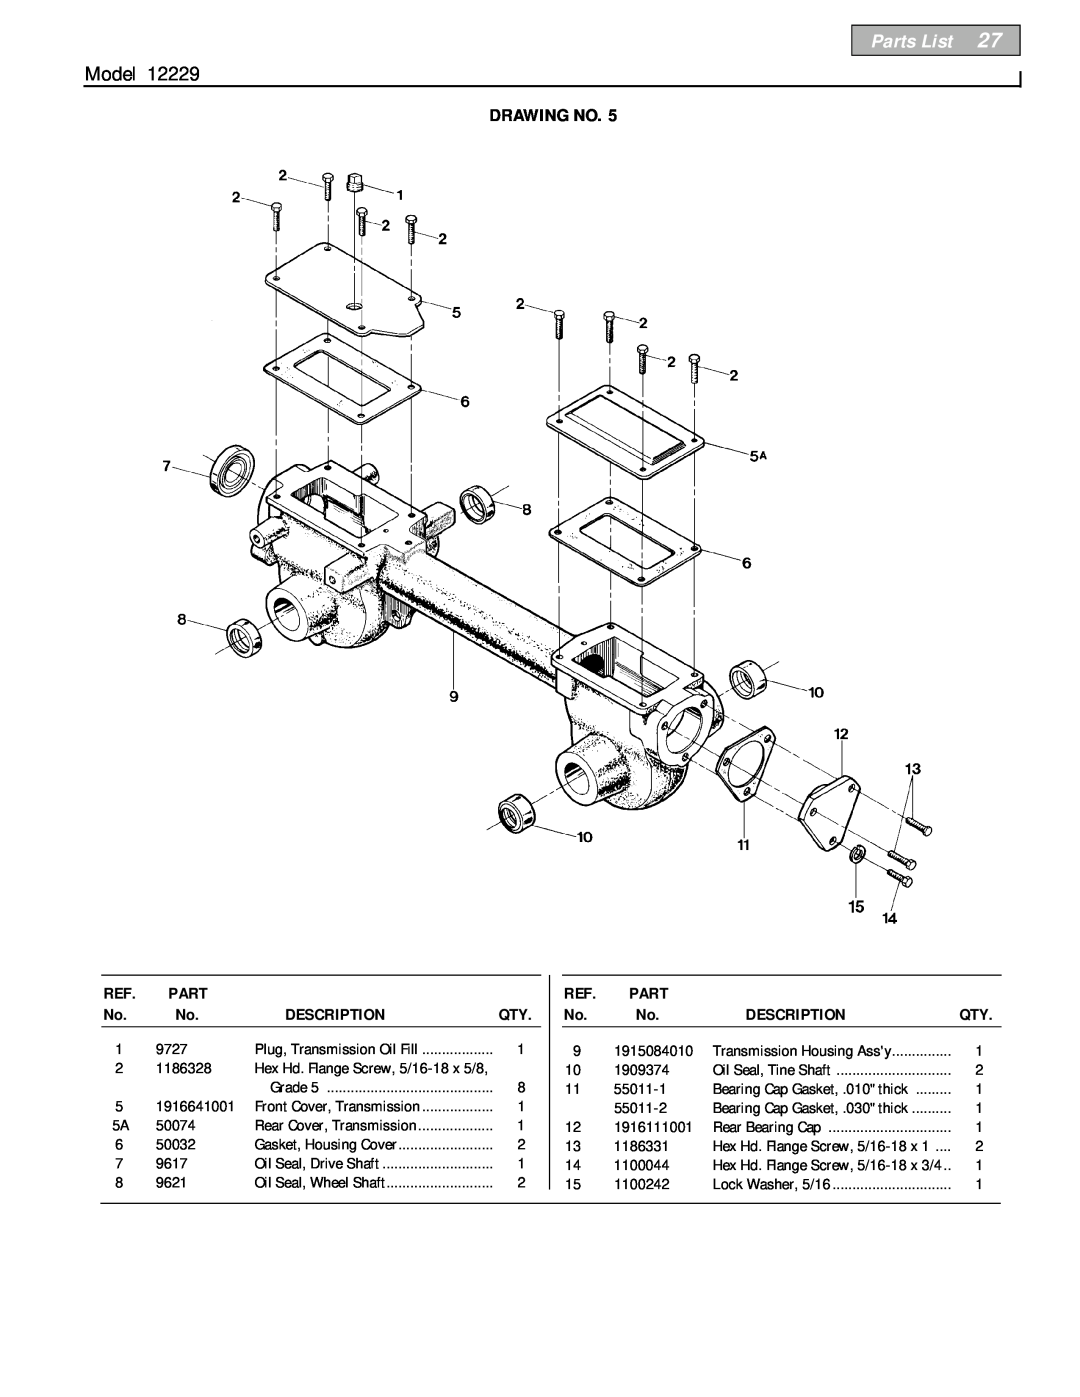 Bolens 12229 owner manual Parts List, Model, Drawing No, Description 